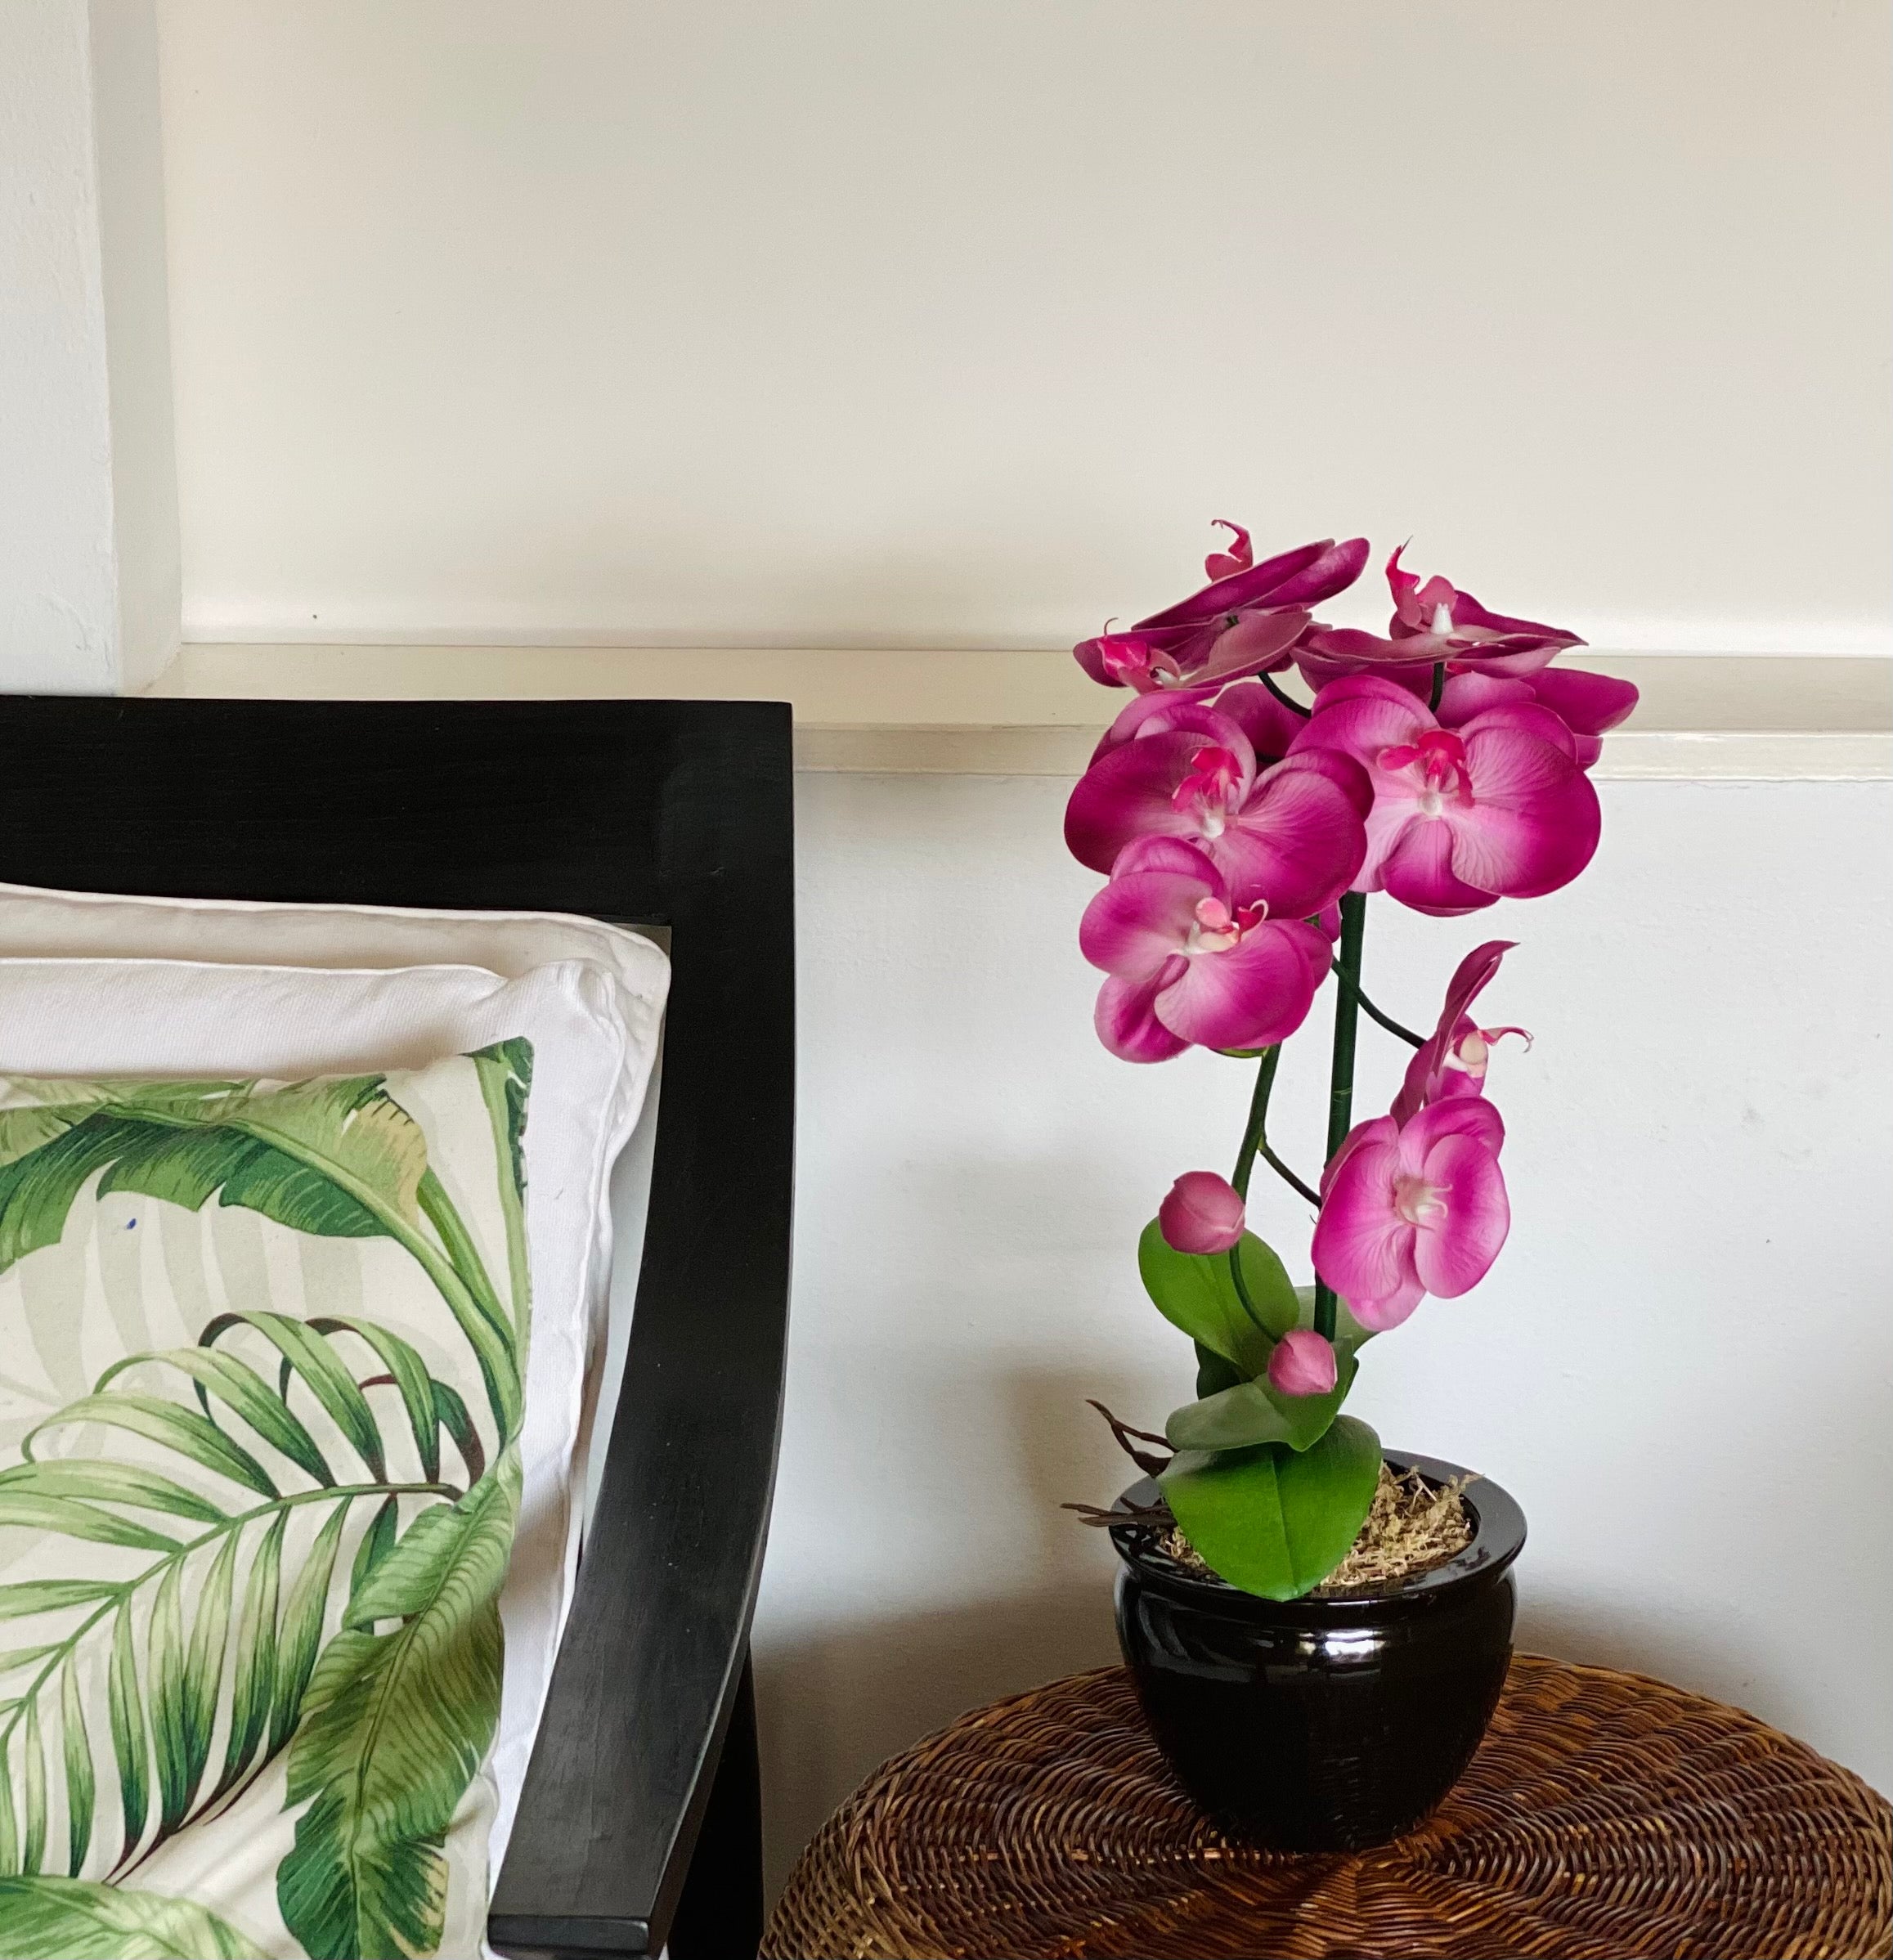 Purple Orchid - Single stem arrangement